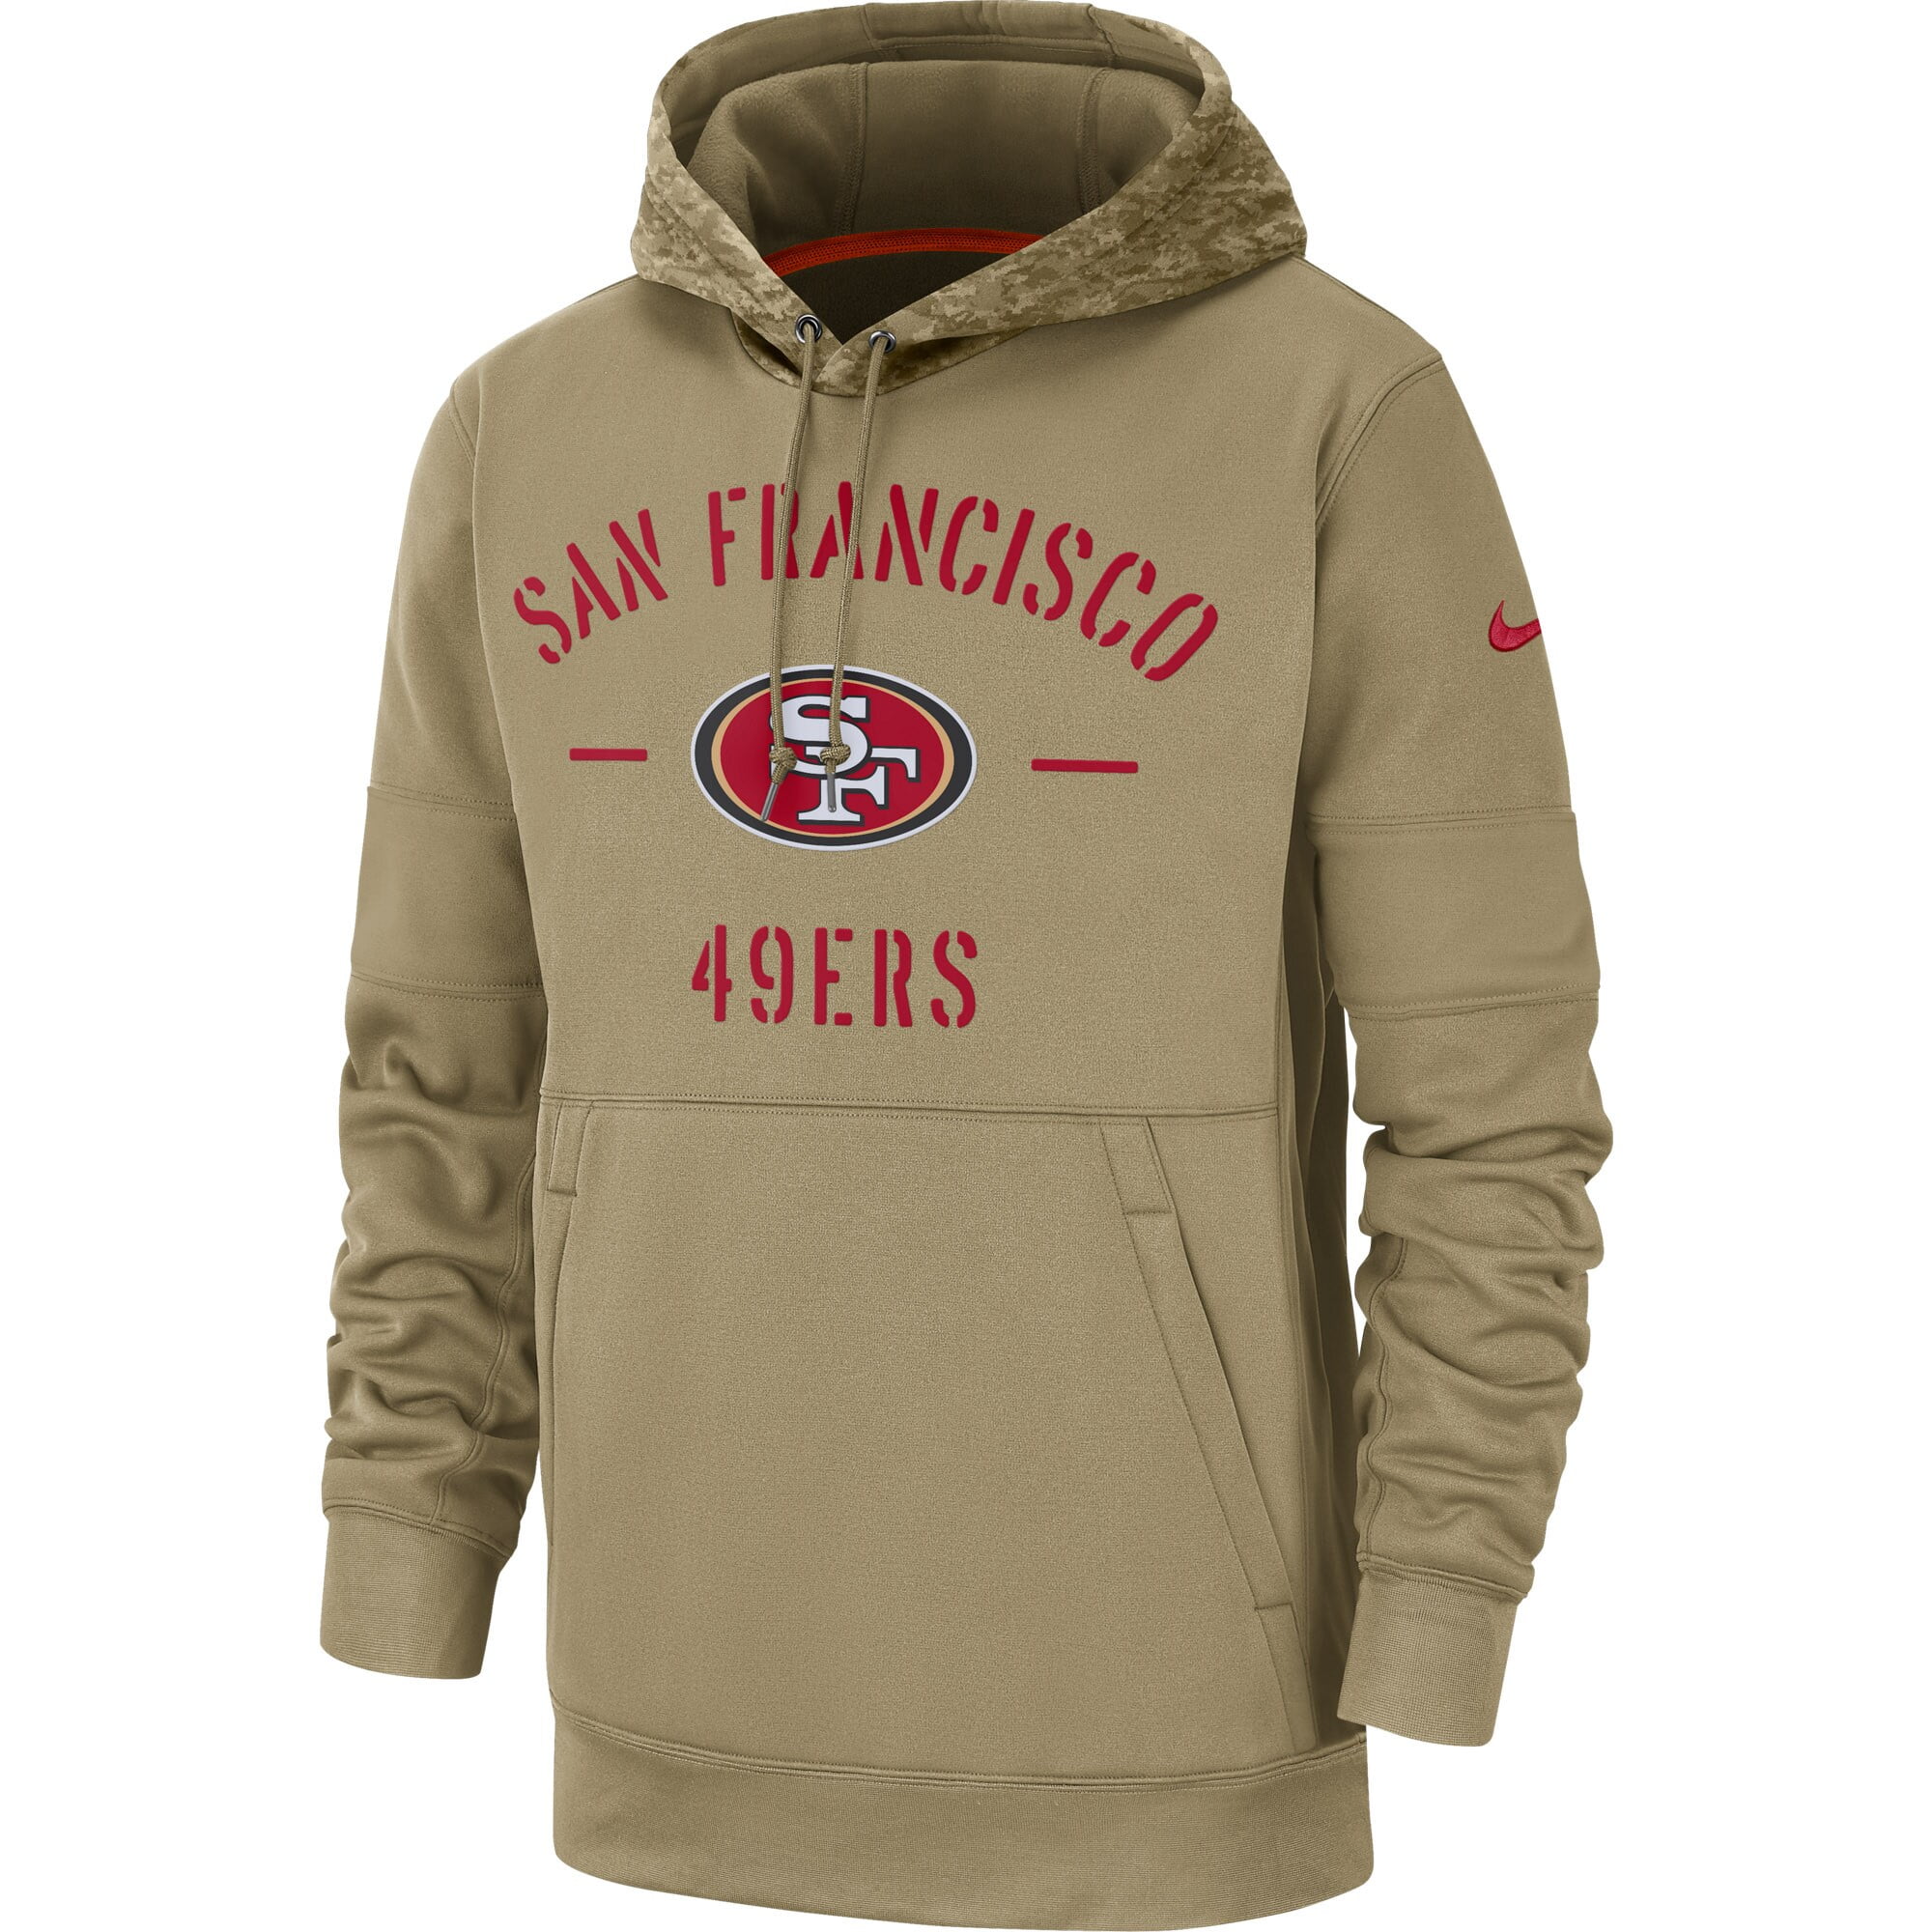 nike salute to service 49ers hoodie